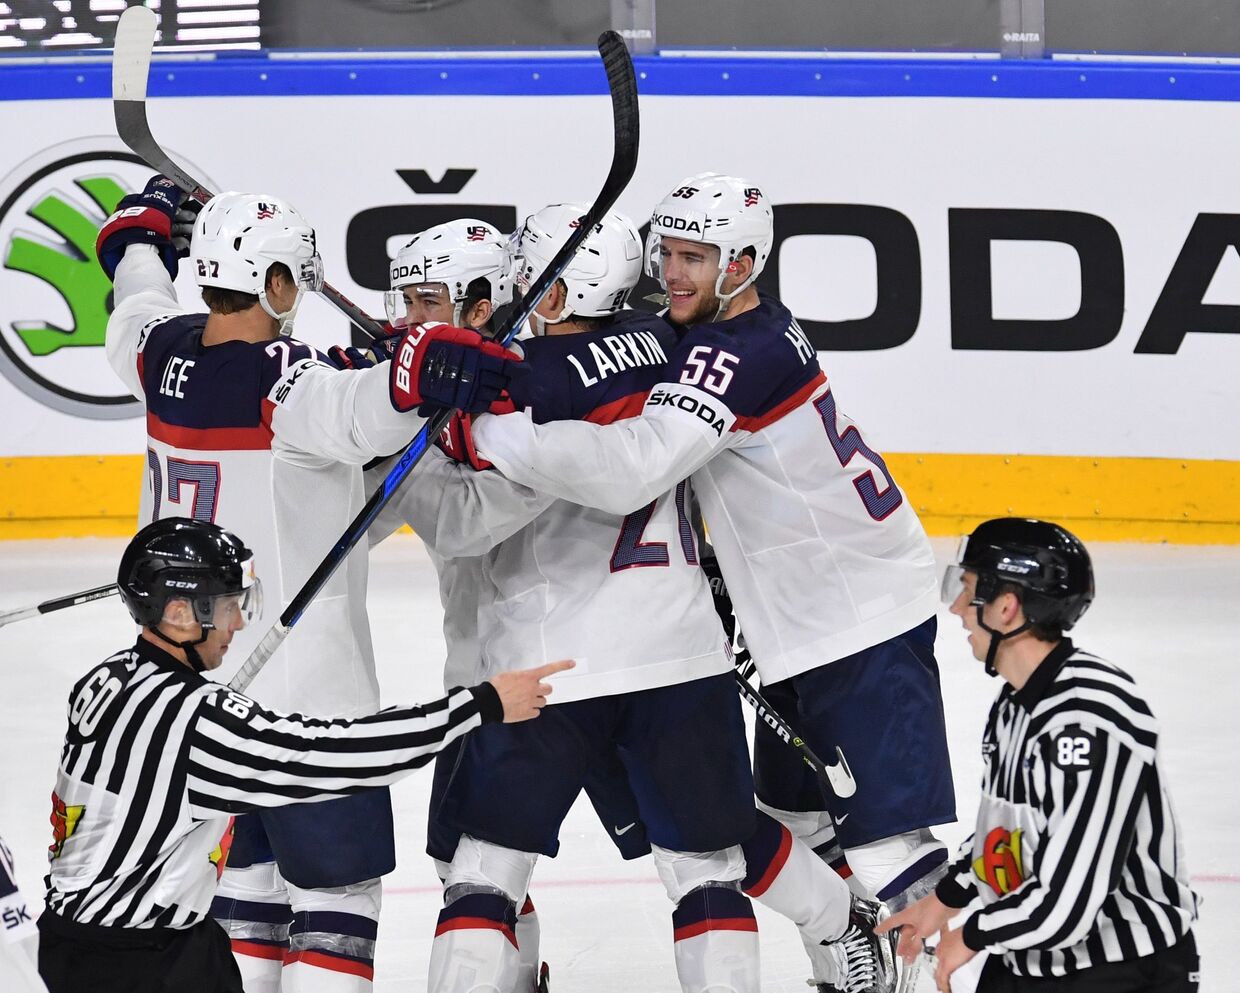 Игроки сборной США радуются забитой шайбе в матче группового этапа чемпионата мира по хоккею 2017 между сборными командами России и США